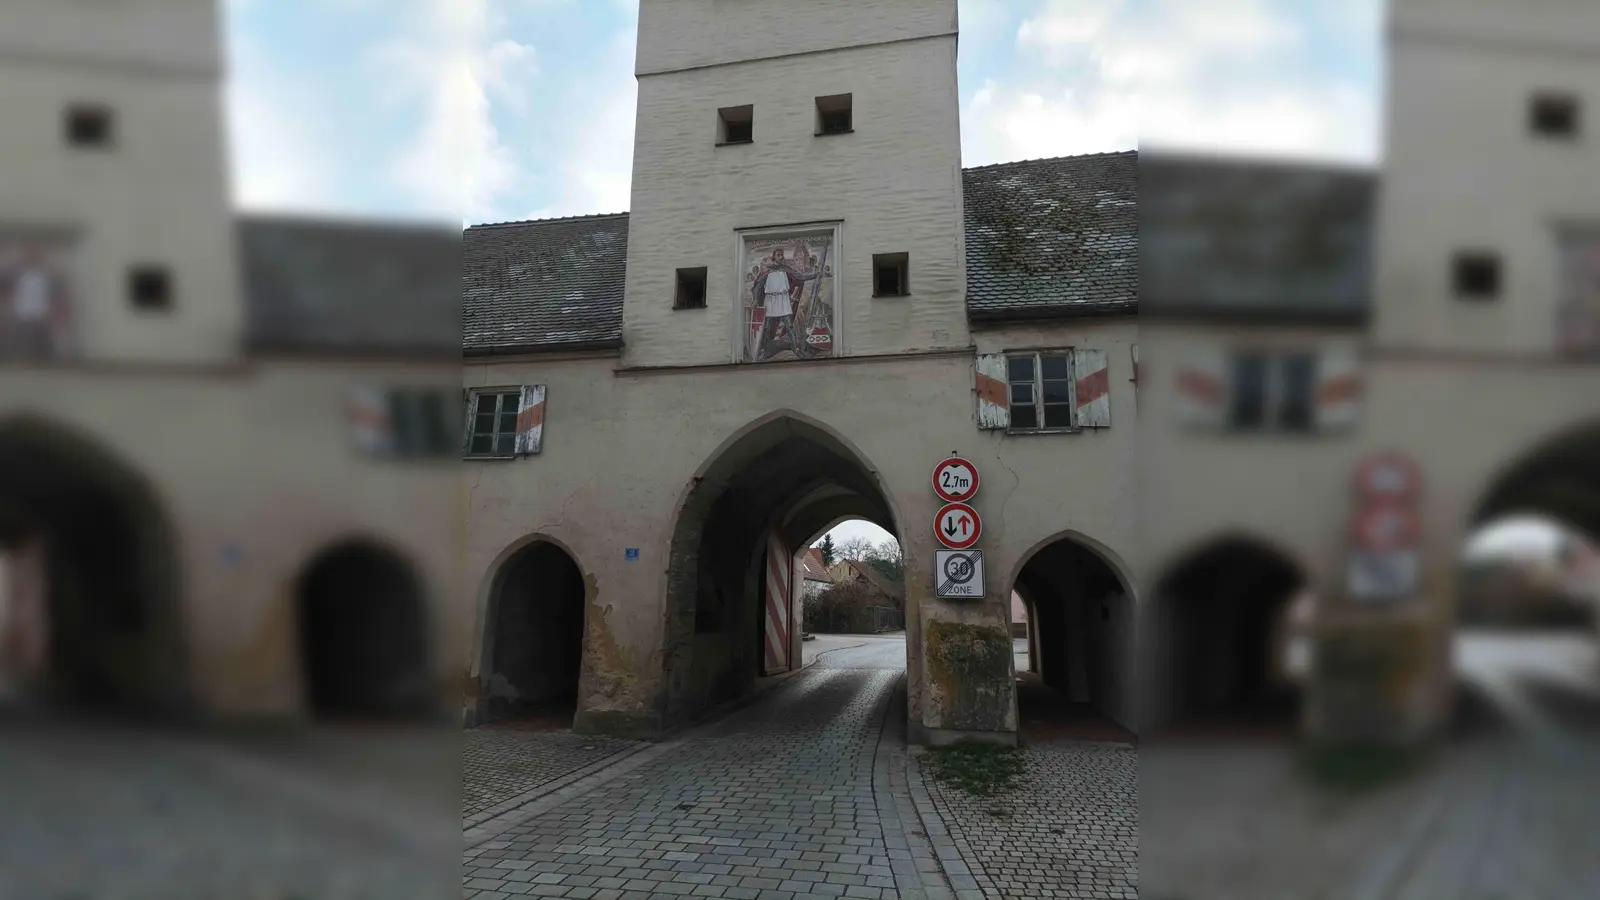 <b>Im Oberen Tor</b> des Pöttmeser Marktplatzes ist der Stammvater der Familie von Gumppenberg zu sehen: Hildebrand von Vohburg kaufte 1280 das Dorf Pöttmes, baute auf dem Gumppenberg eine Burg und nannte sich fortan nach seinem neuen Stammsitz.<br> (Foto: Wilhelm Wagner)